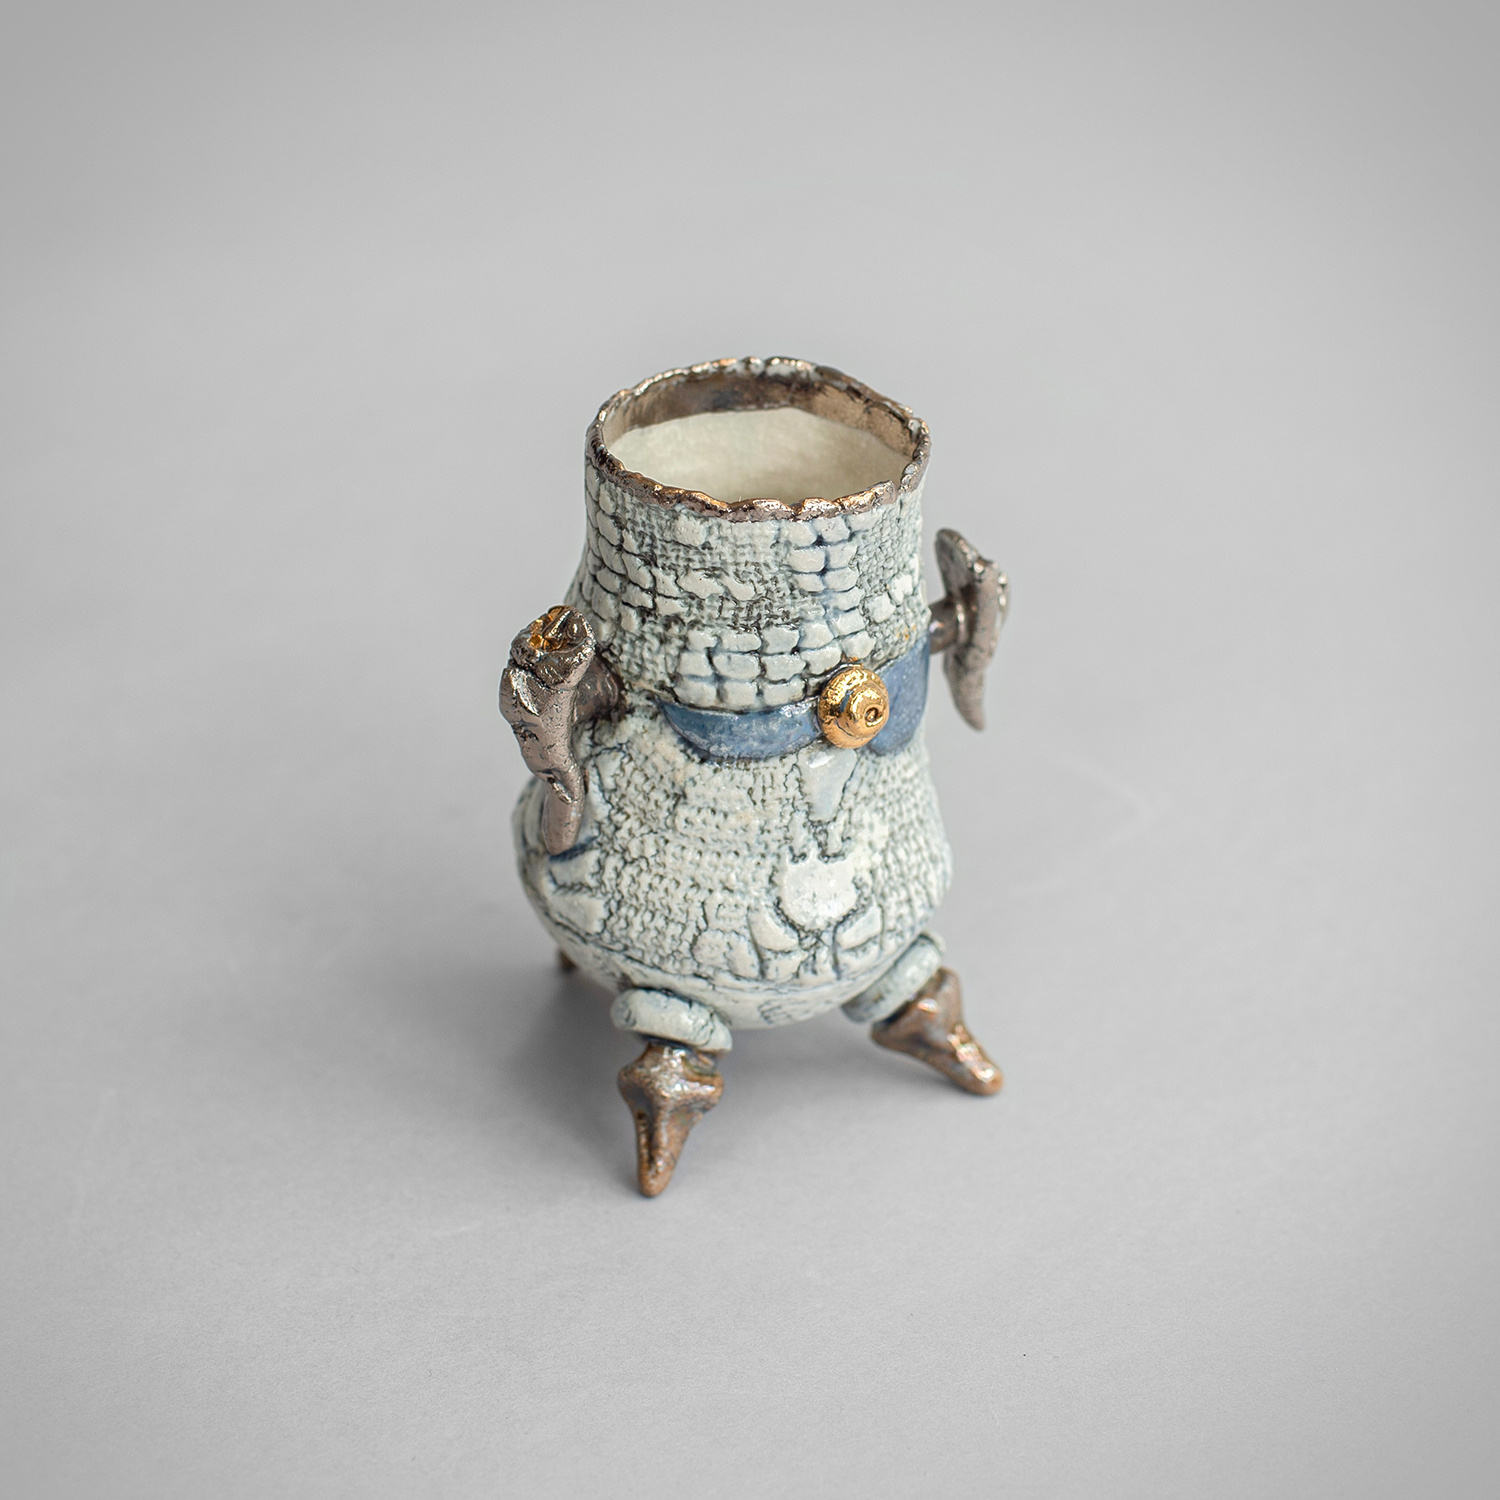 Tiny Pot by Pam Schomberg